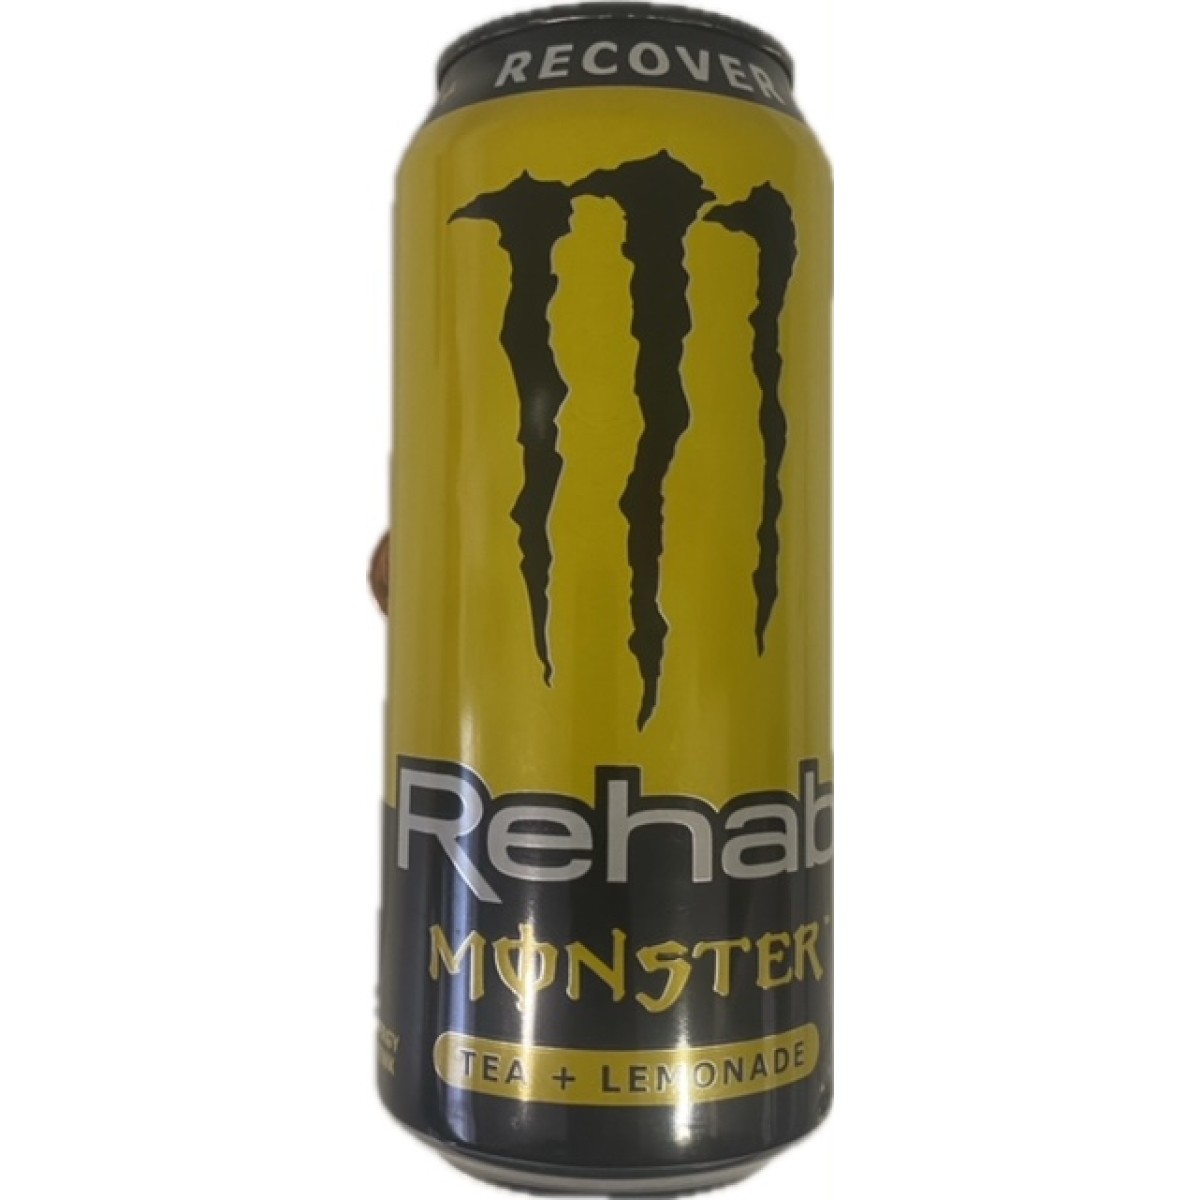 Monster recover tea+lemonade 458ml